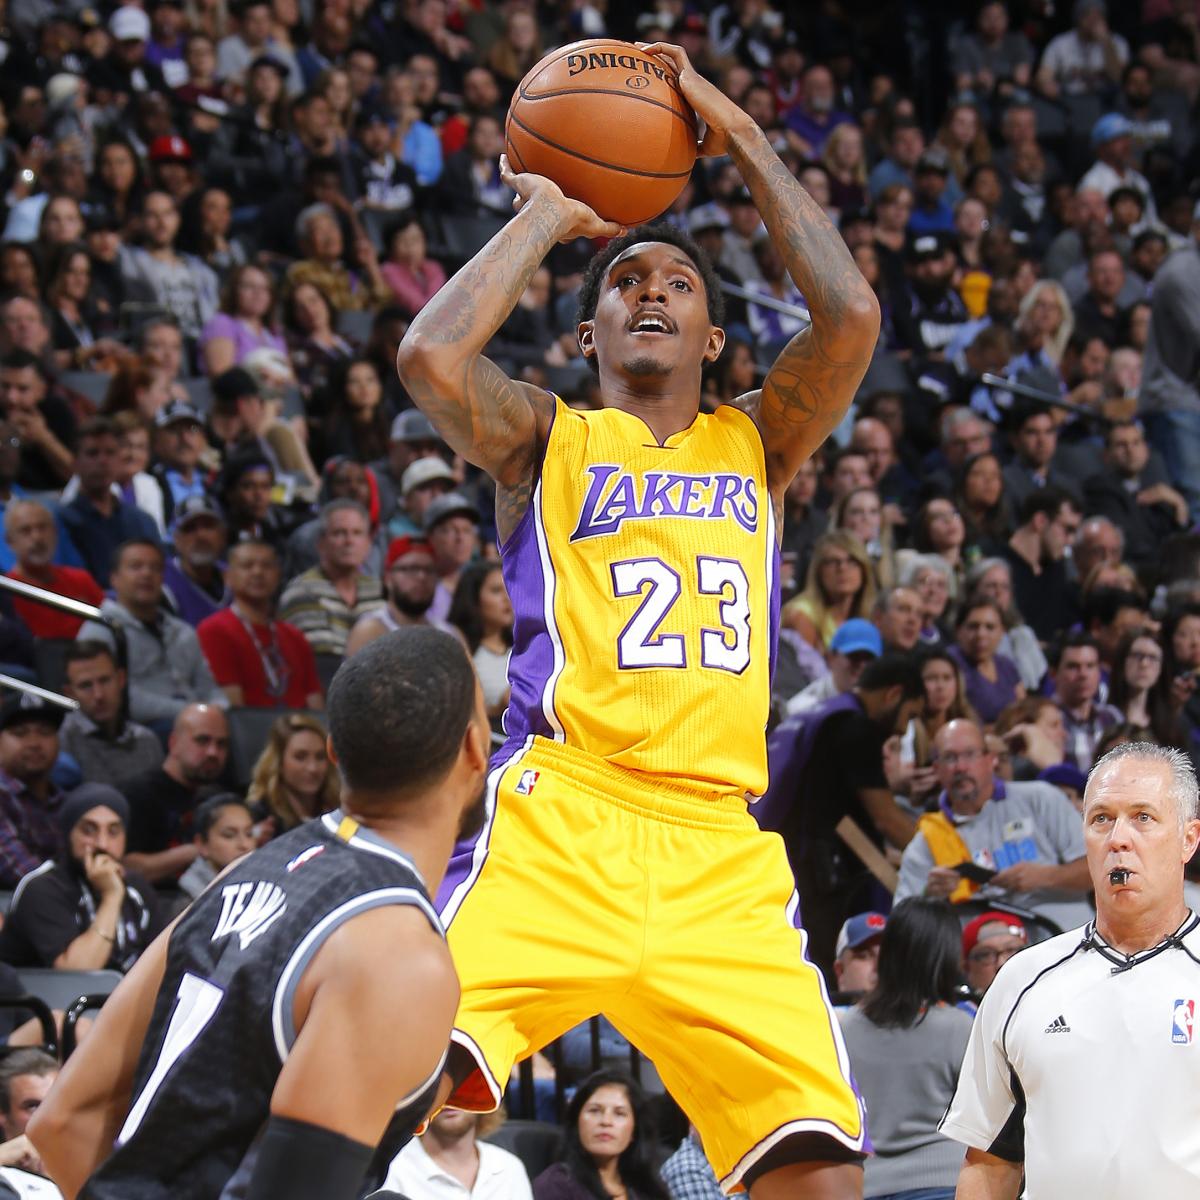 Lakers vs. Kings: Score, Highlights, Reaction from 2016 Regular Season | Bleacher ...